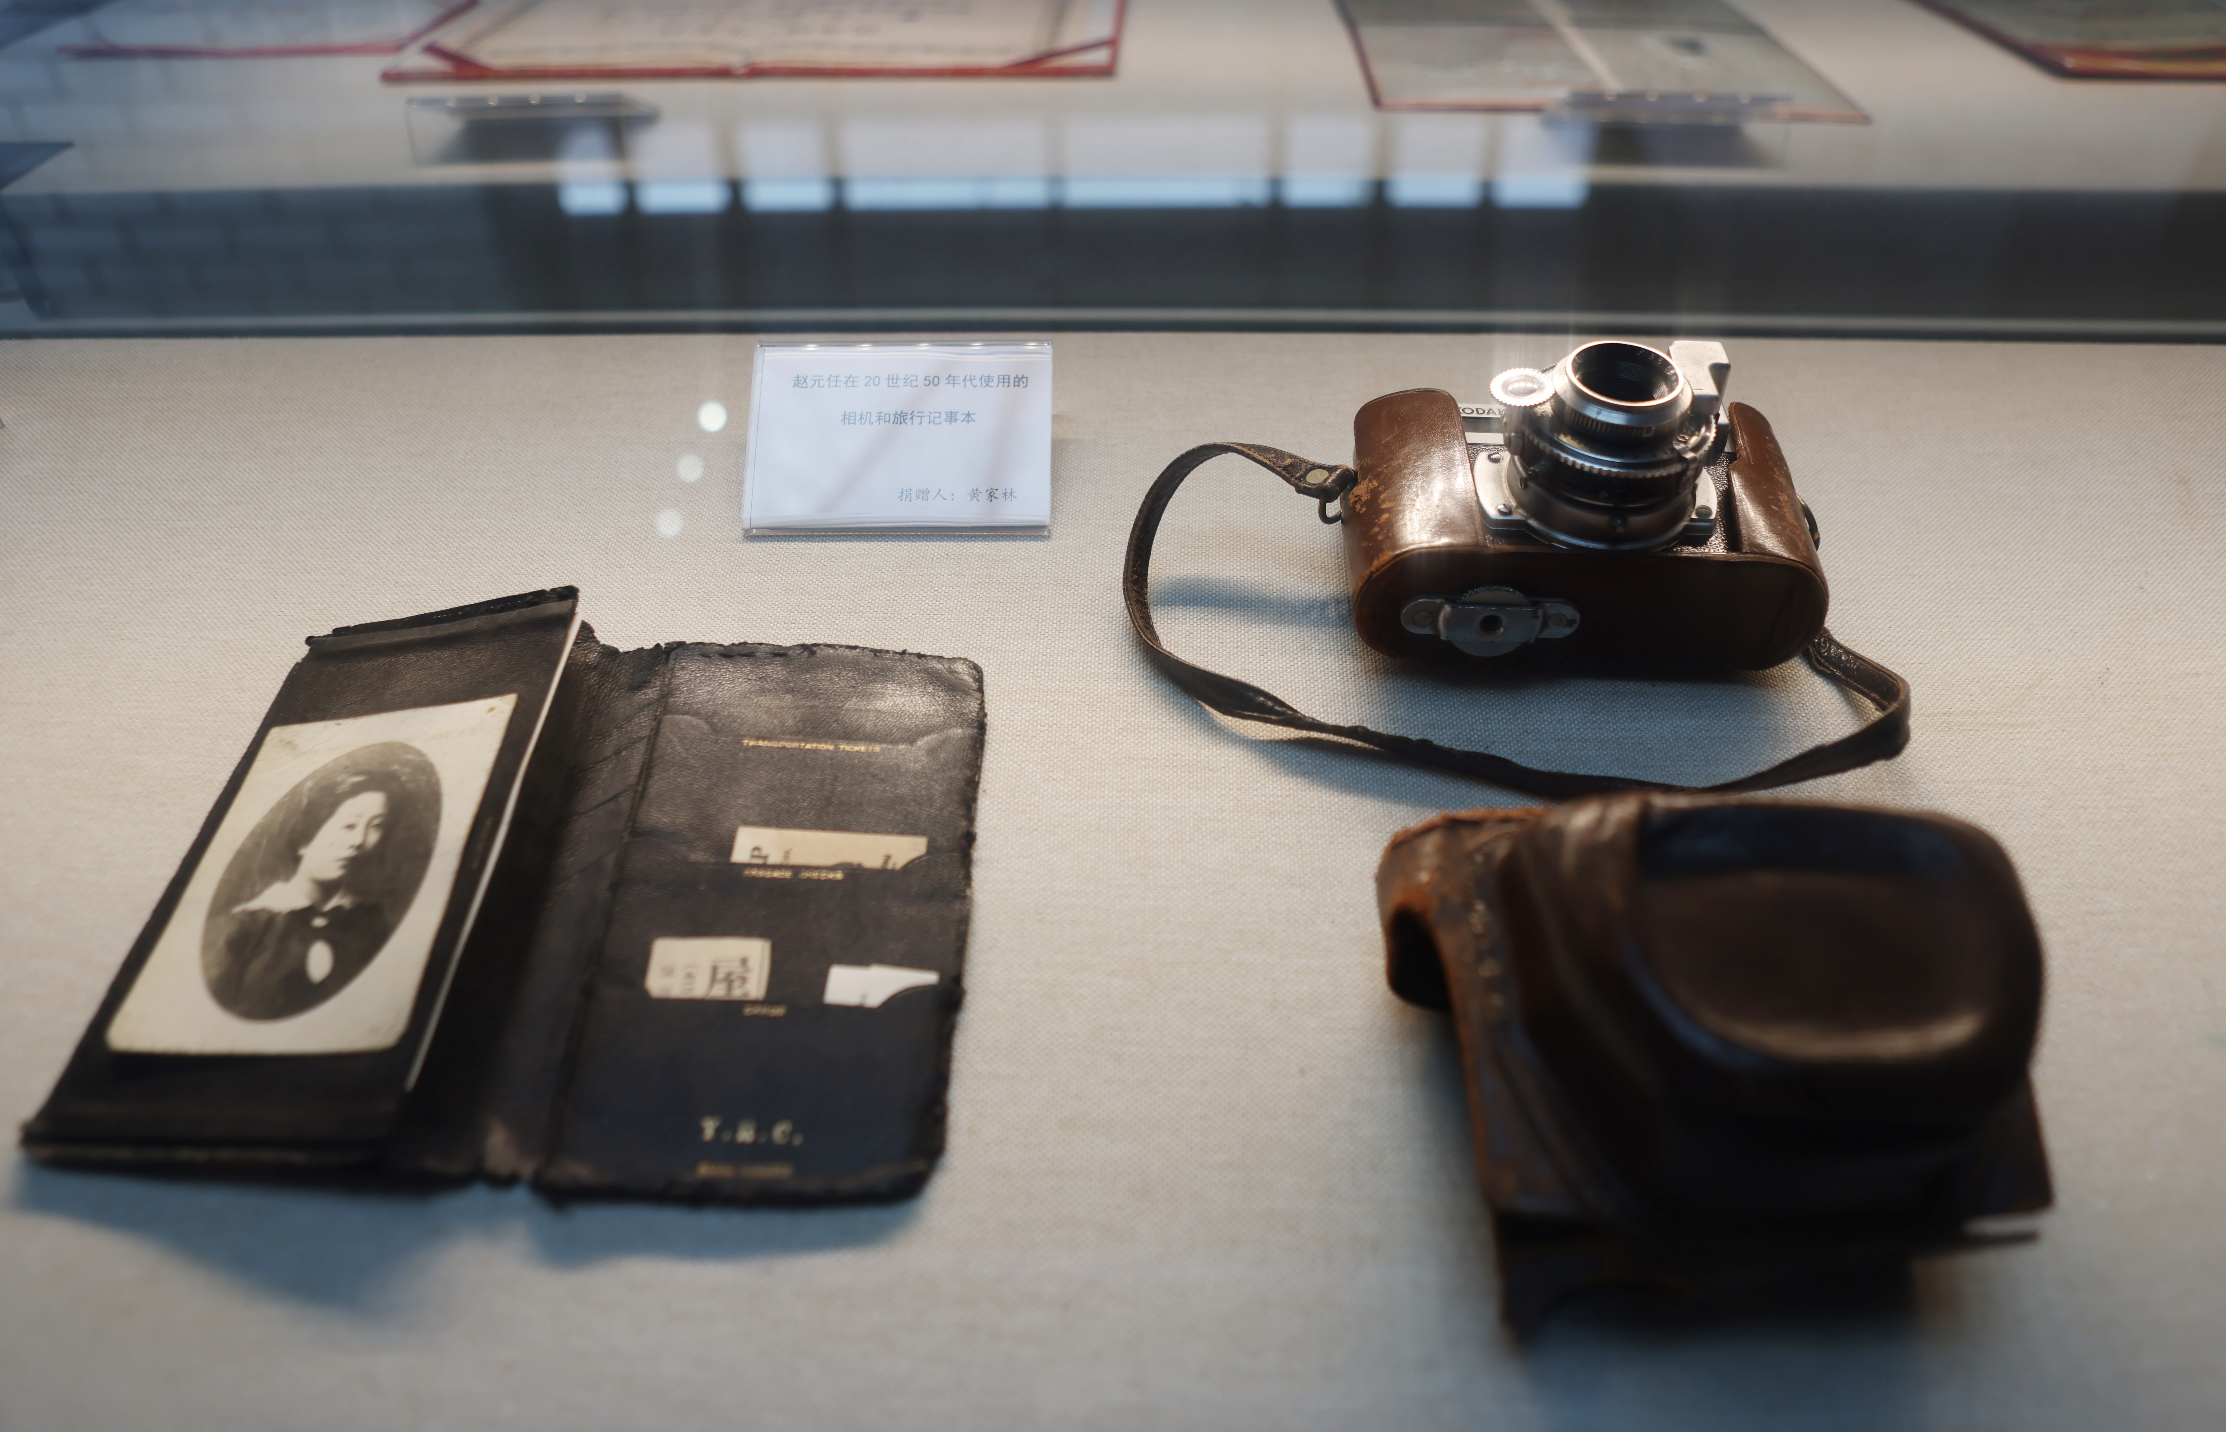 趙元任在20世紀50年代使用過的照相機和旅行記事本。新京報記者 李木易 攝